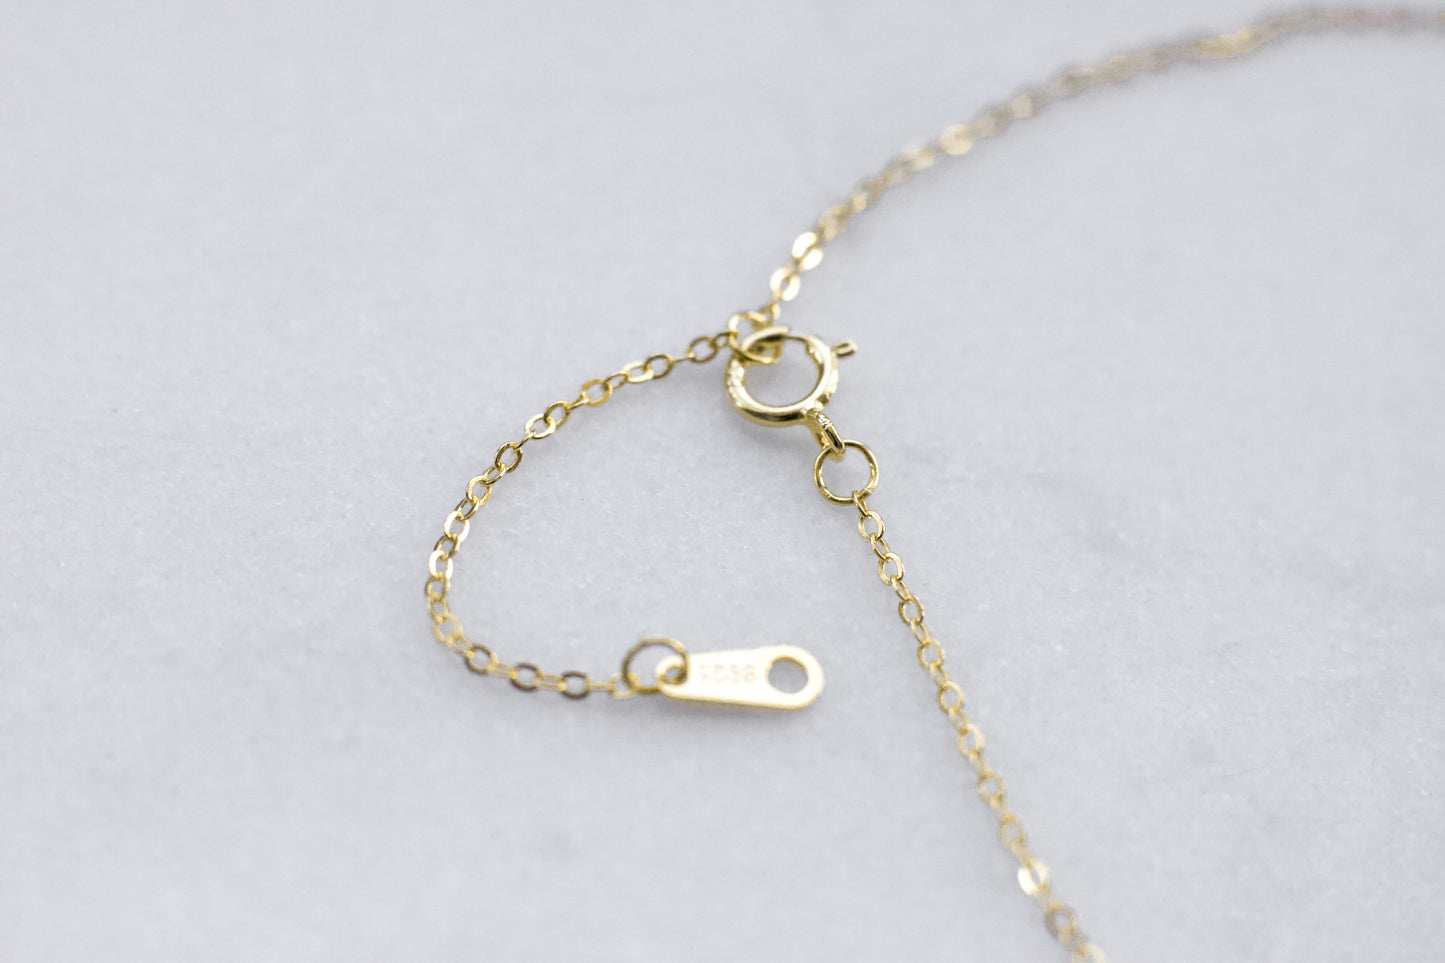 Gold Key Necklace